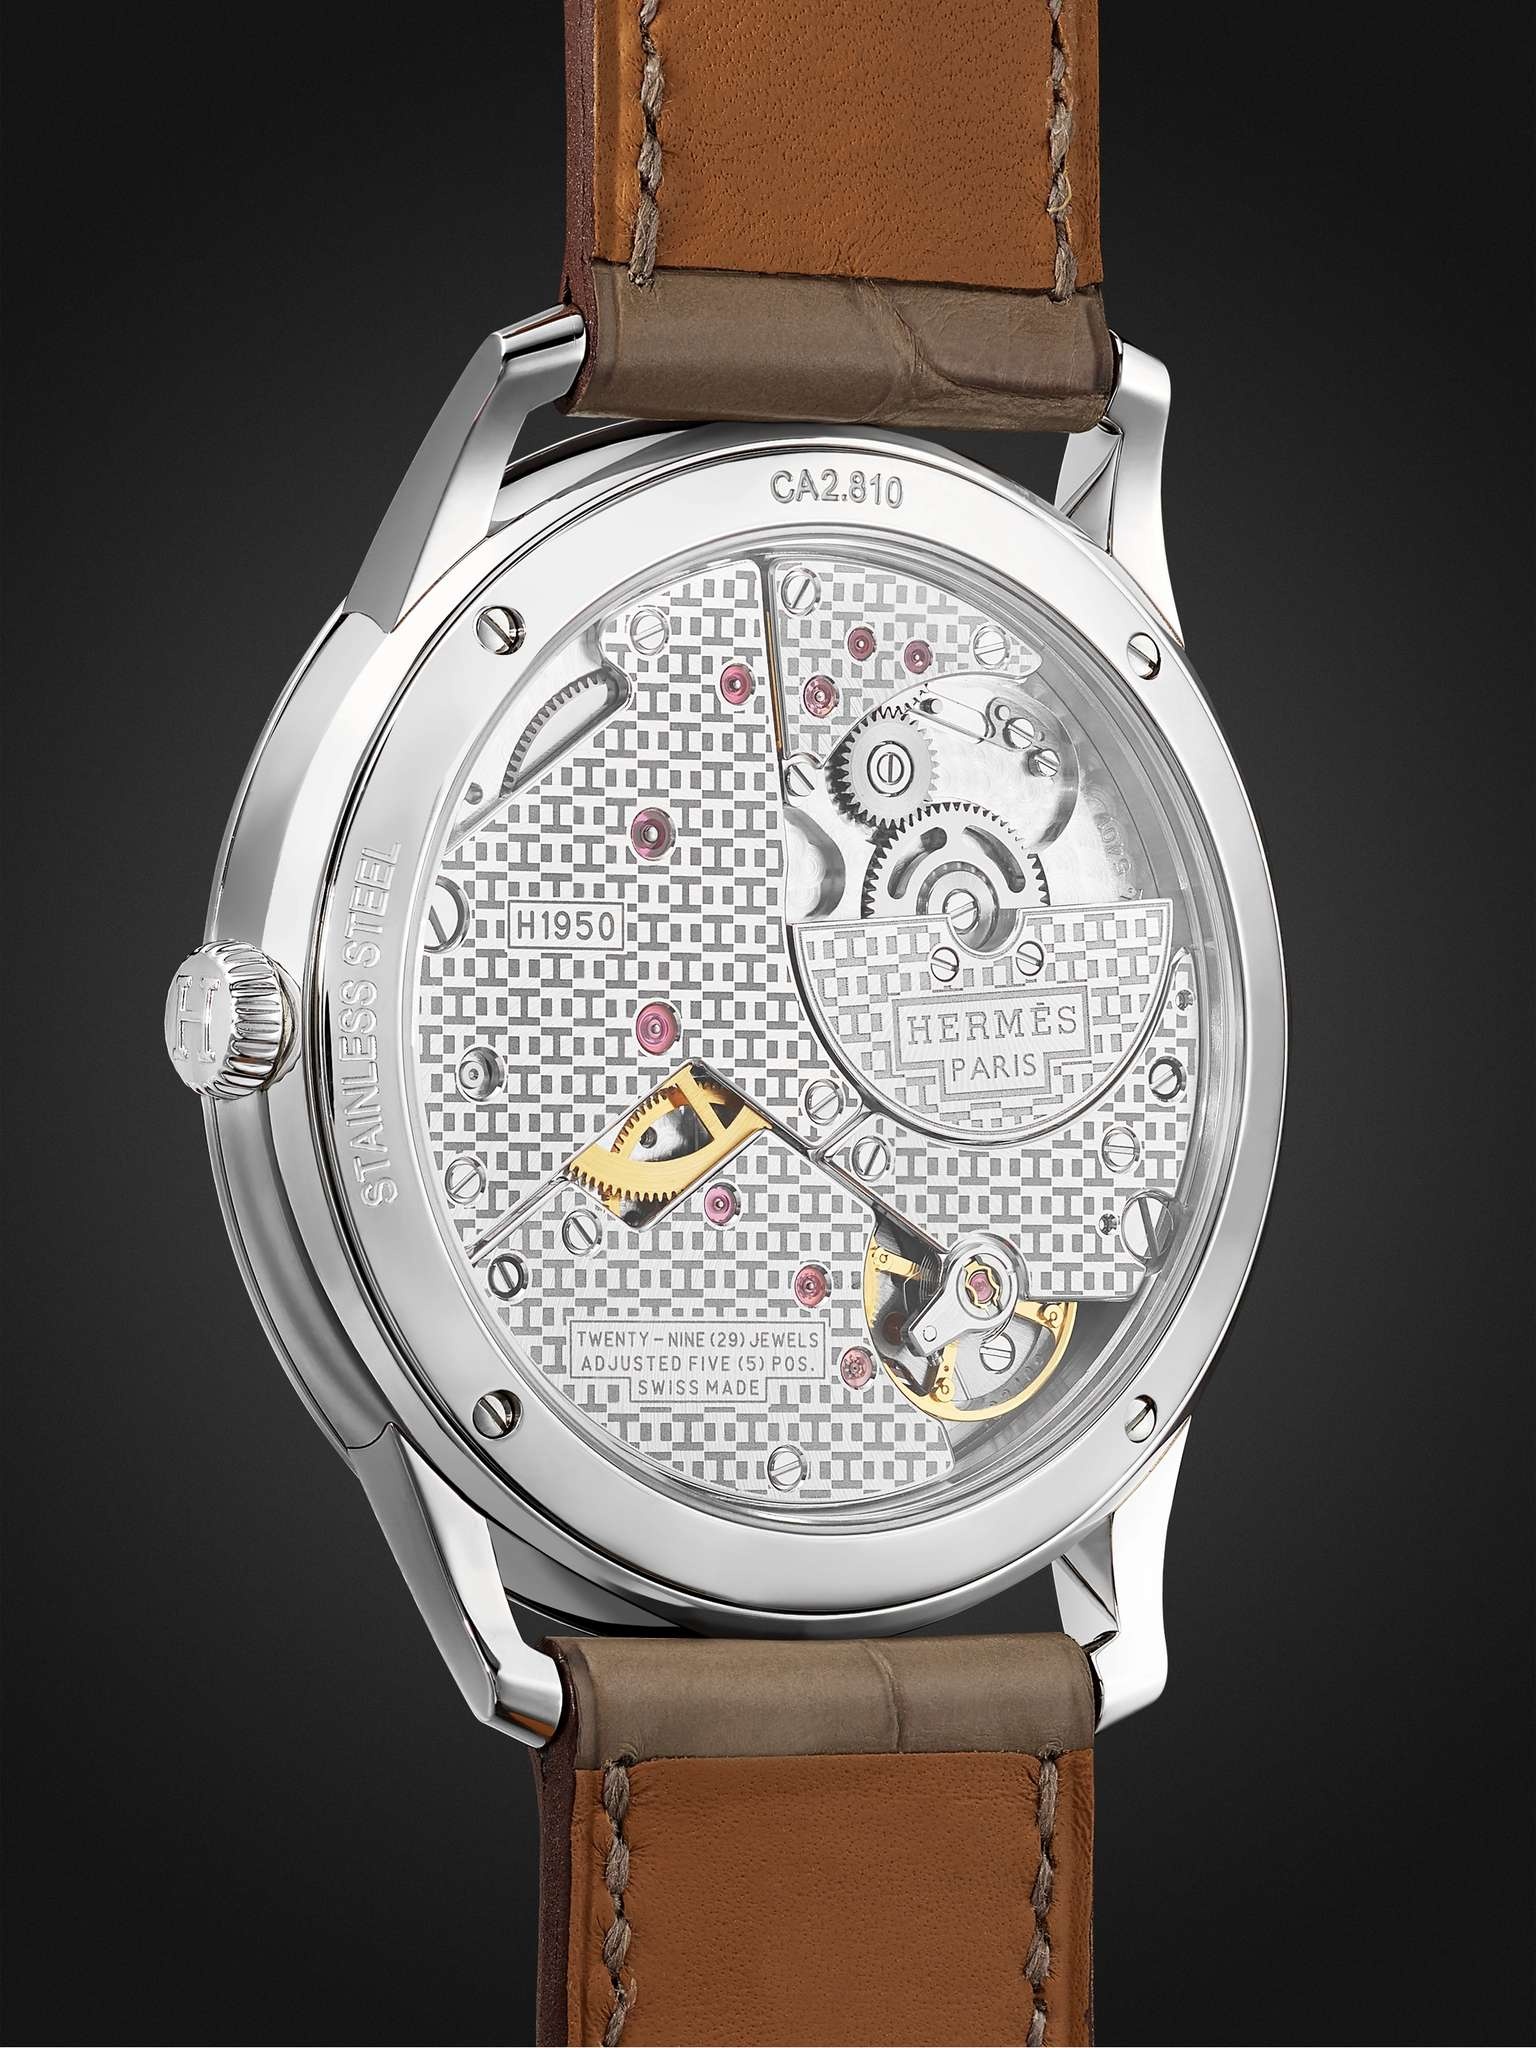 Slim d'Hermès Acier Automatic 39.5mm Stainless Steel and Alligator Watch, Ref. No. W045266WW00 - 5